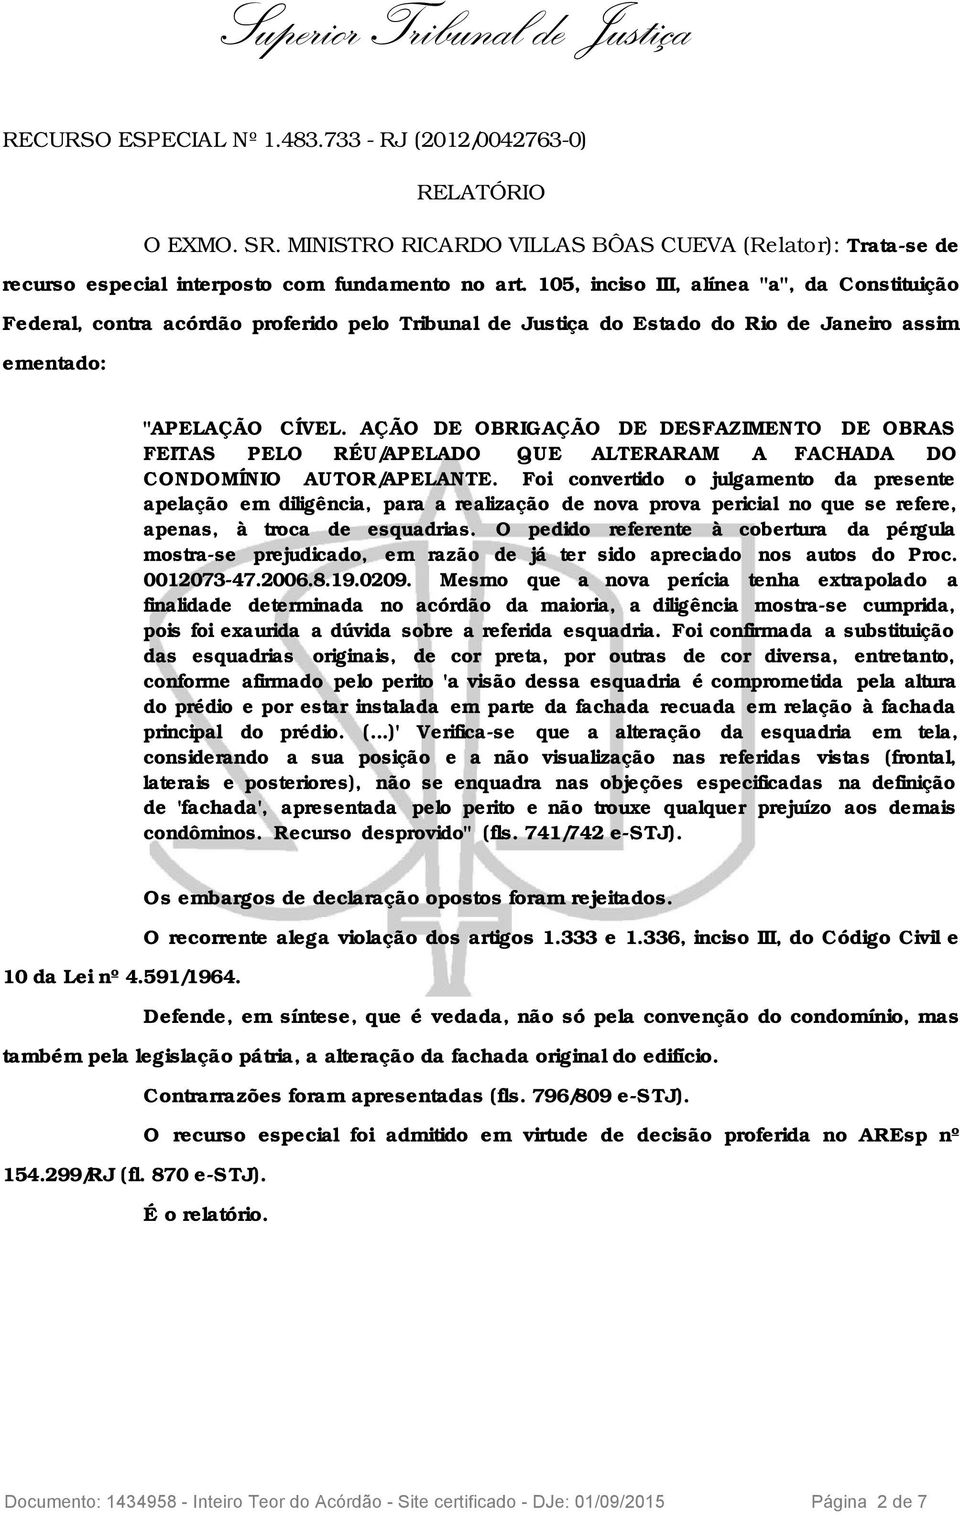 AÇÃO DE OBRIGAÇÃO DE DESFAZIMENTO DE OBRAS FEITAS PELO RÉU/APELADO QUE ALTERARAM A FACHADA DO CONDOMÍNIO AUTOR/APELANTE.